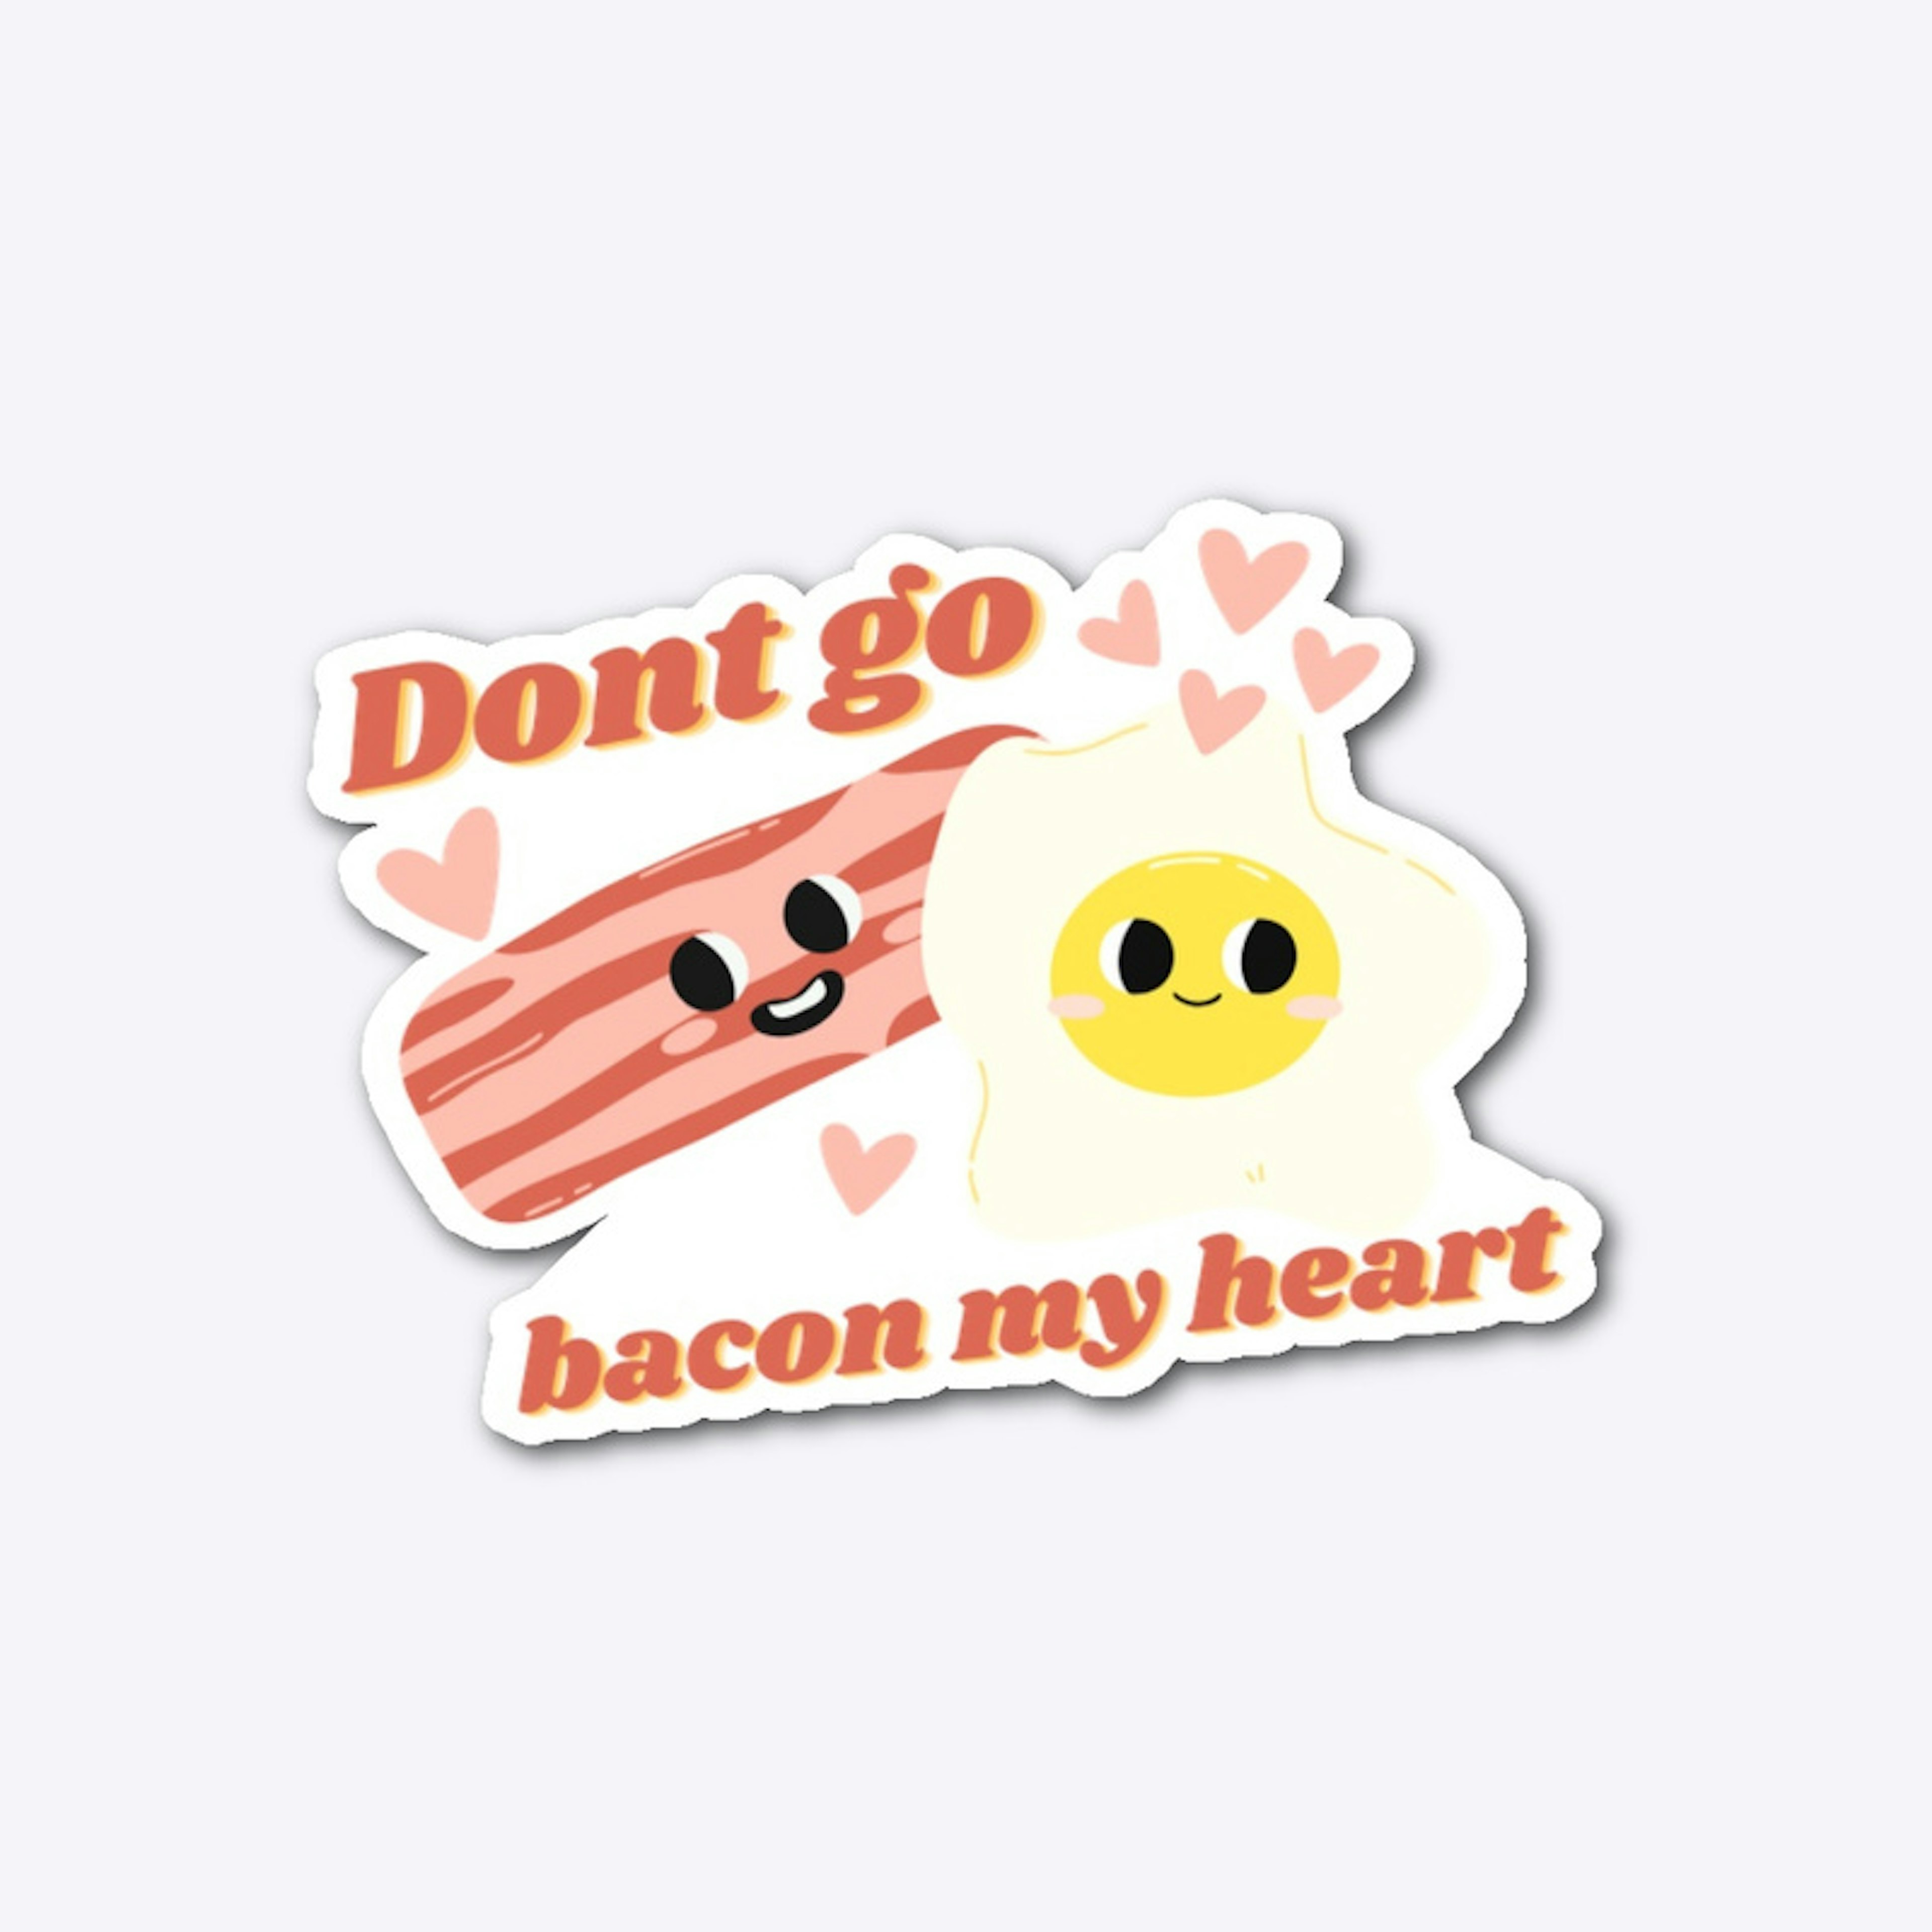 Don’t go bacon my heart v2